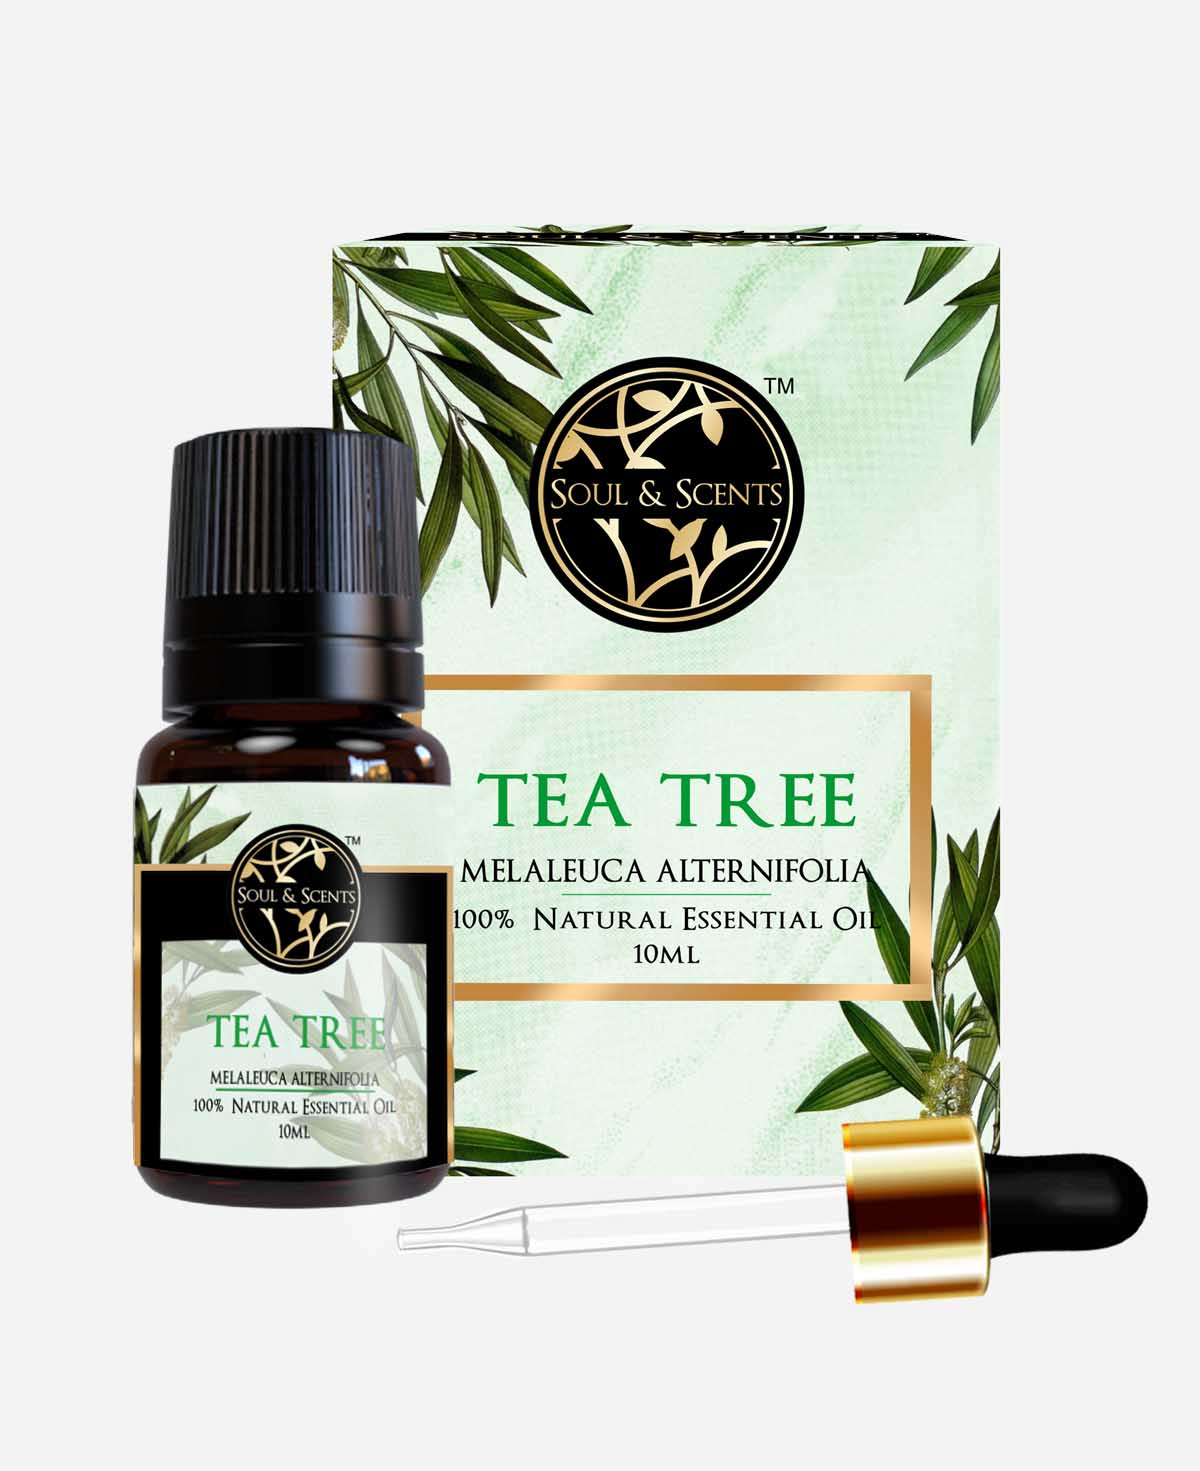 Tea-tree essential oil